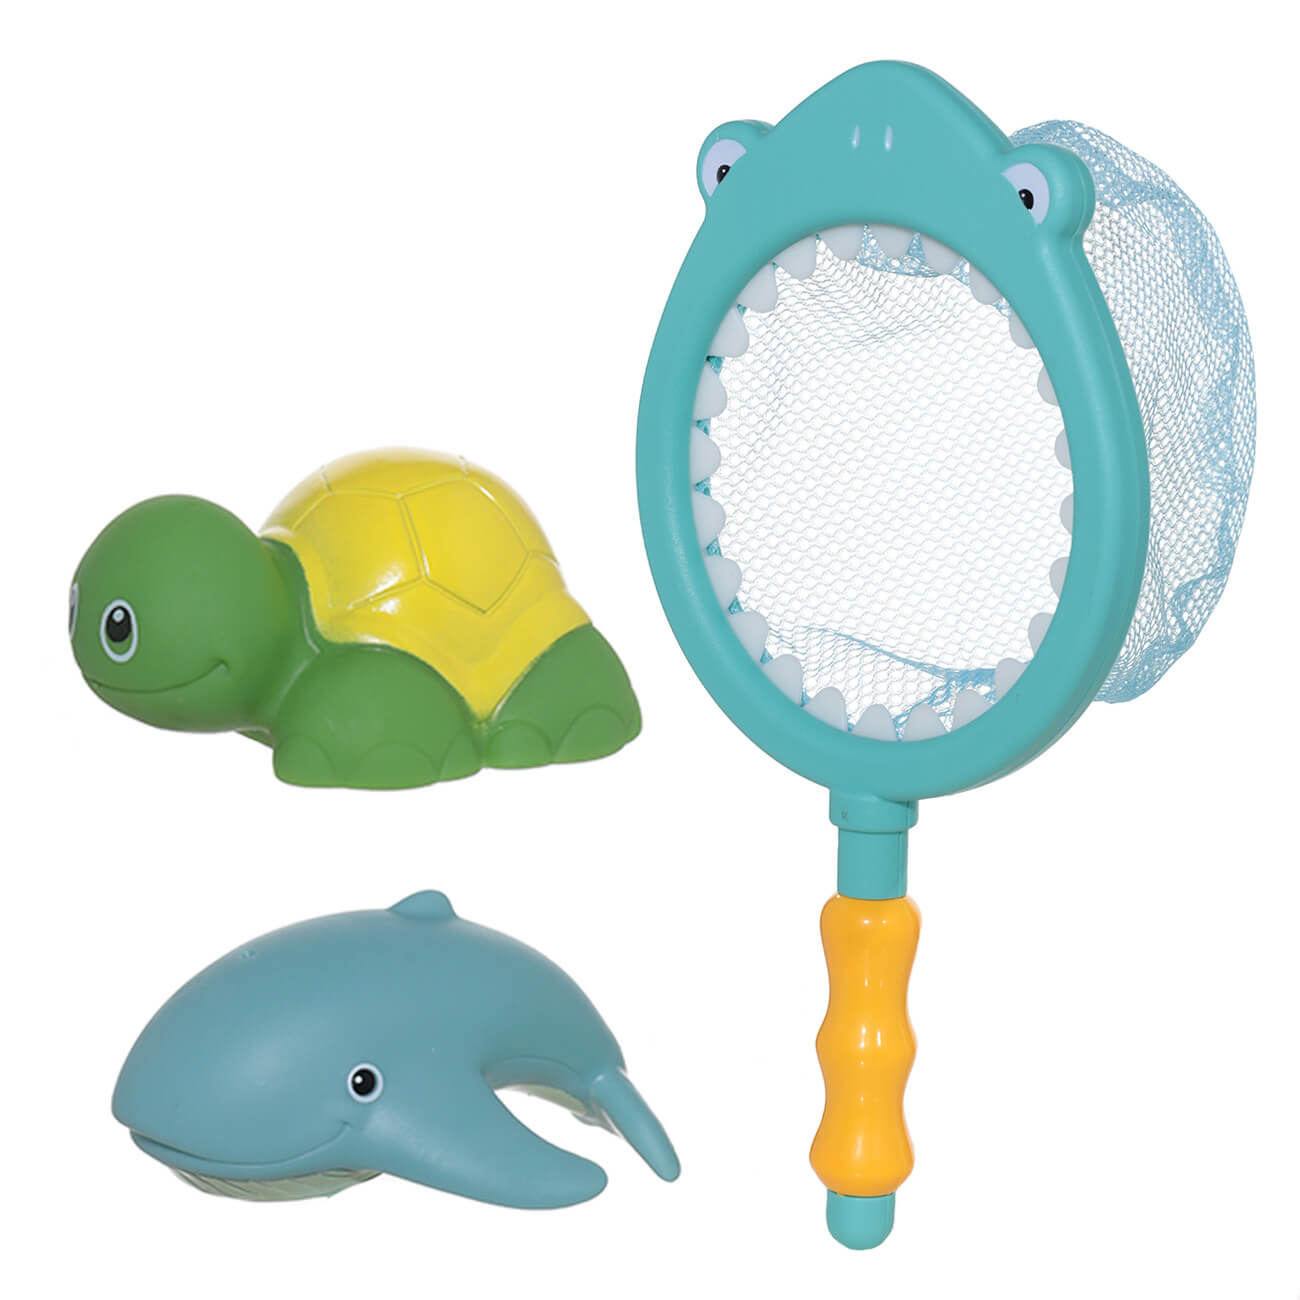 Набор игрушек для купания, 3 пр, сачок/игрушки, резина/пластик, Акула, Aquatic animals набор для создания игрушки